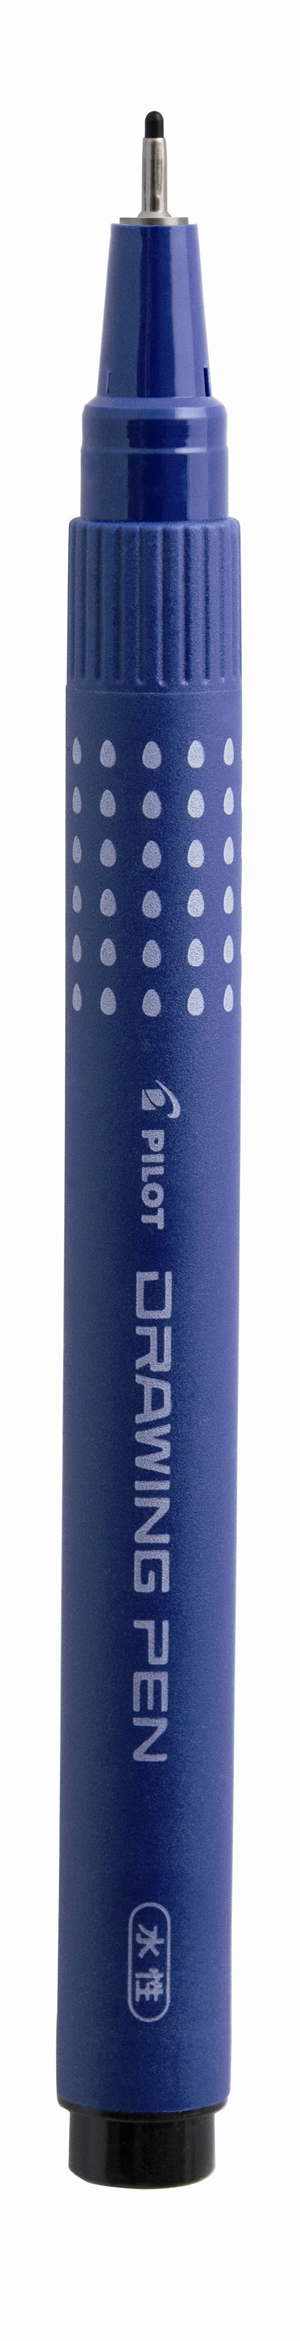 Pilot Filtpen m/hætte Drawing Pen 0,8mm sort